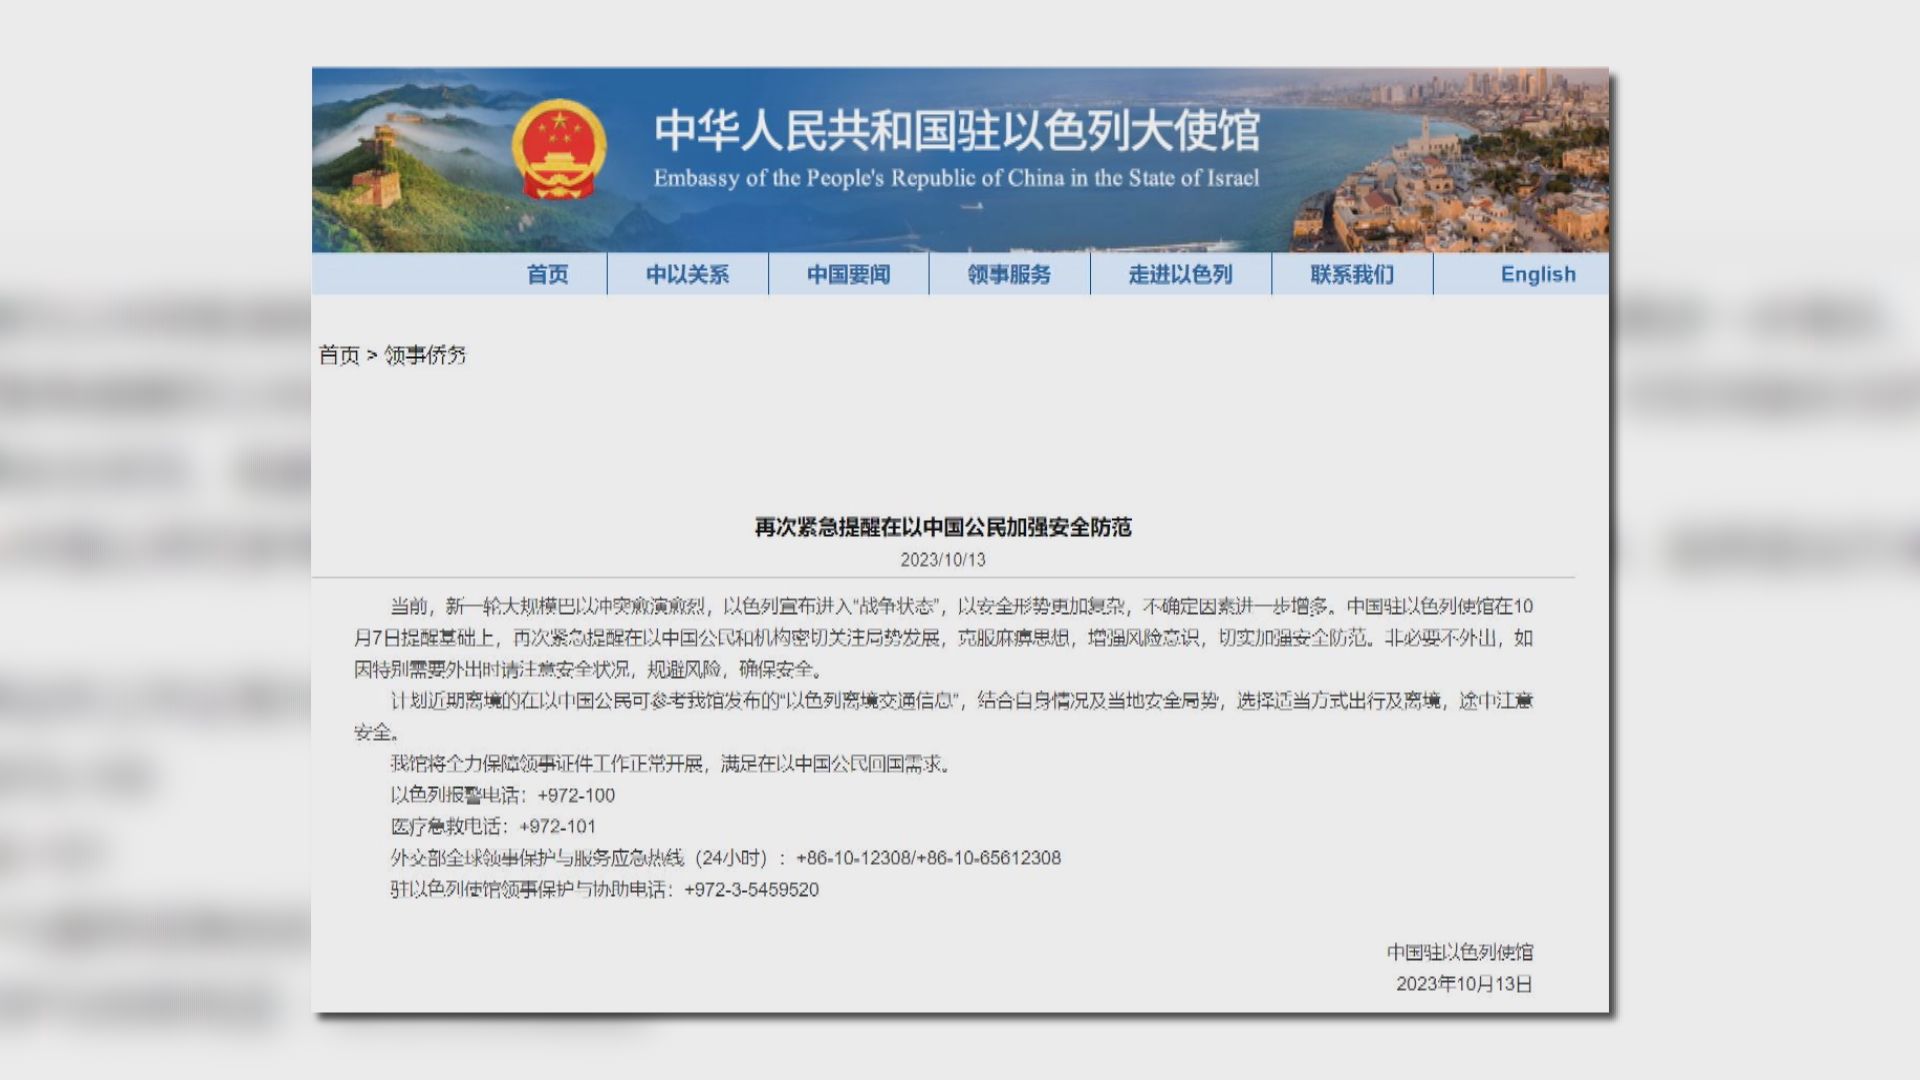 中國駐以色列大使館再次提醒在以公民加強防範